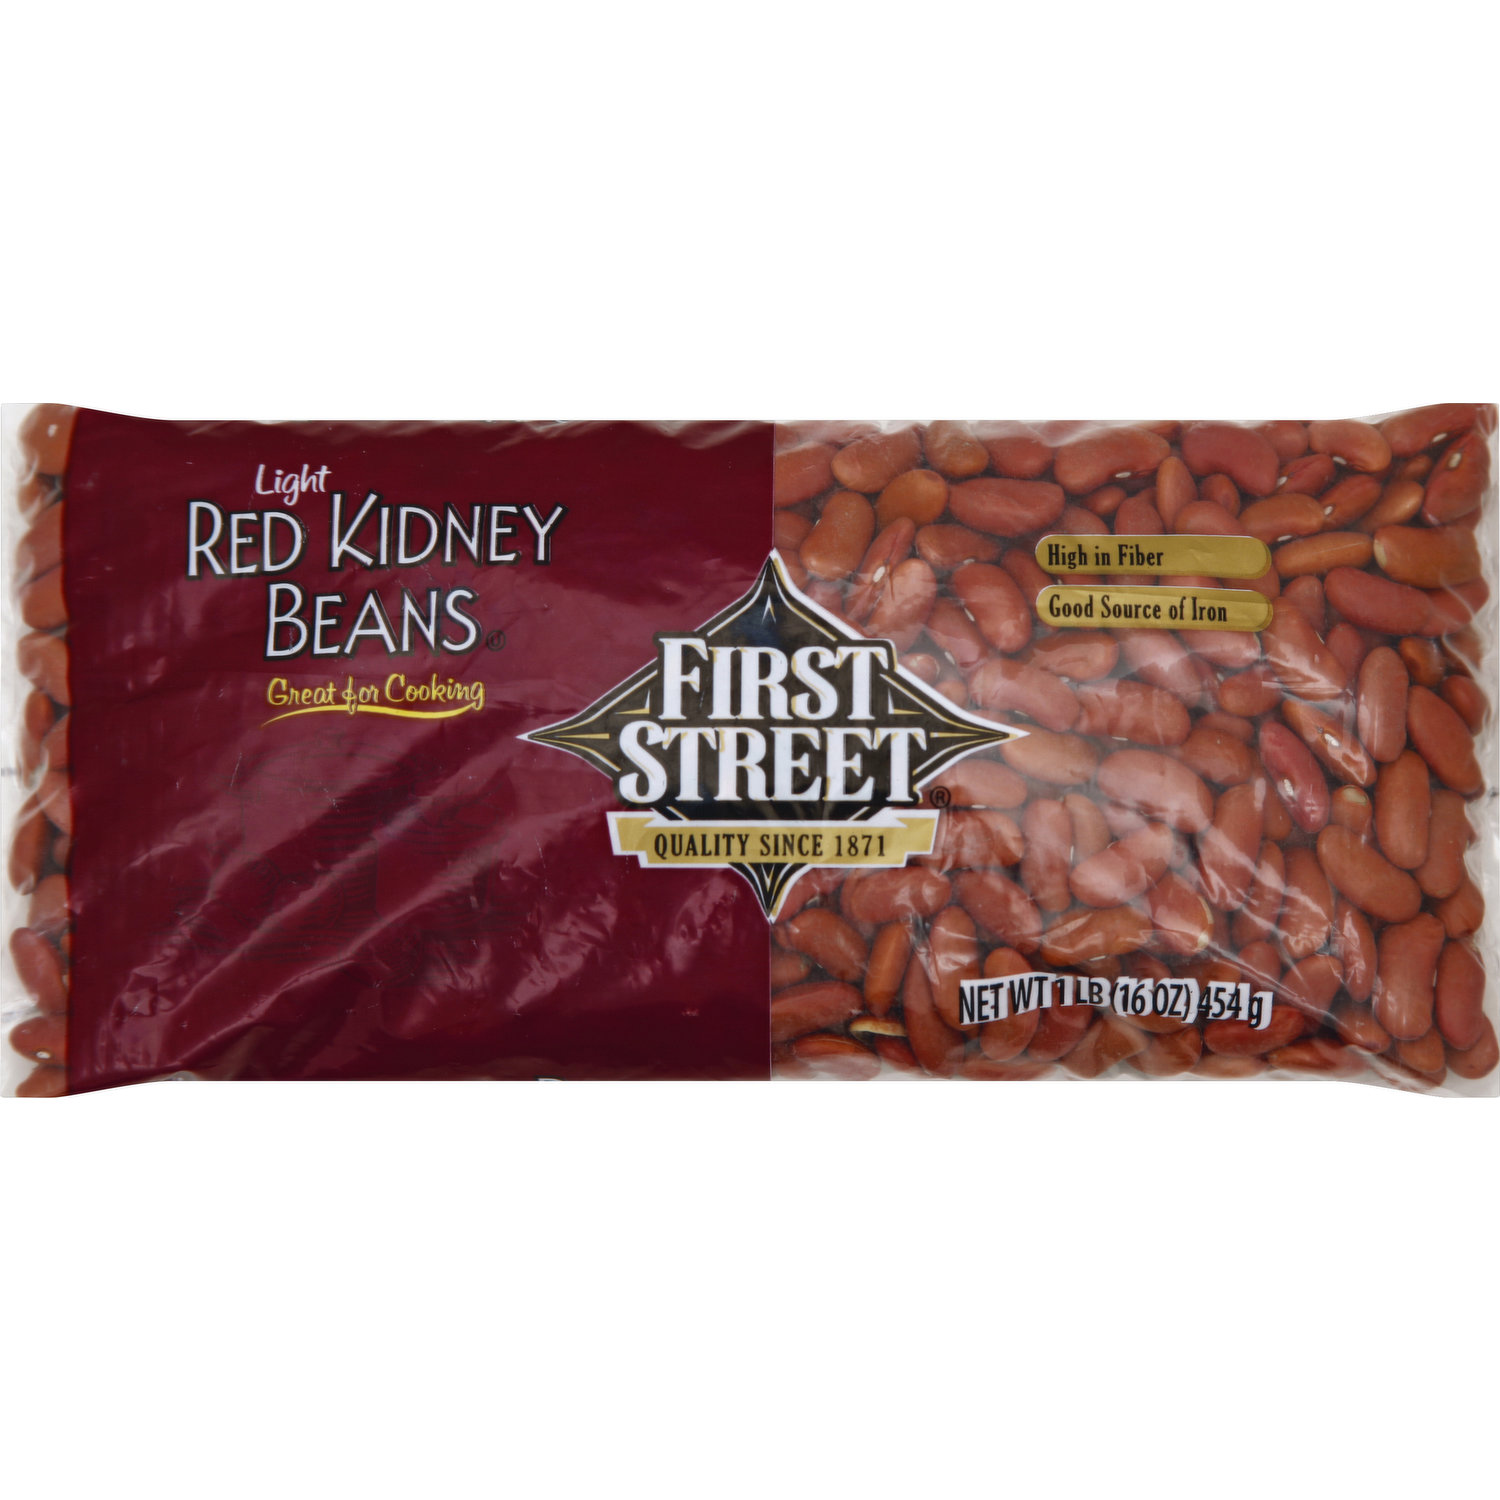 First Street Red Kidney Beans, Light - Smart & Final